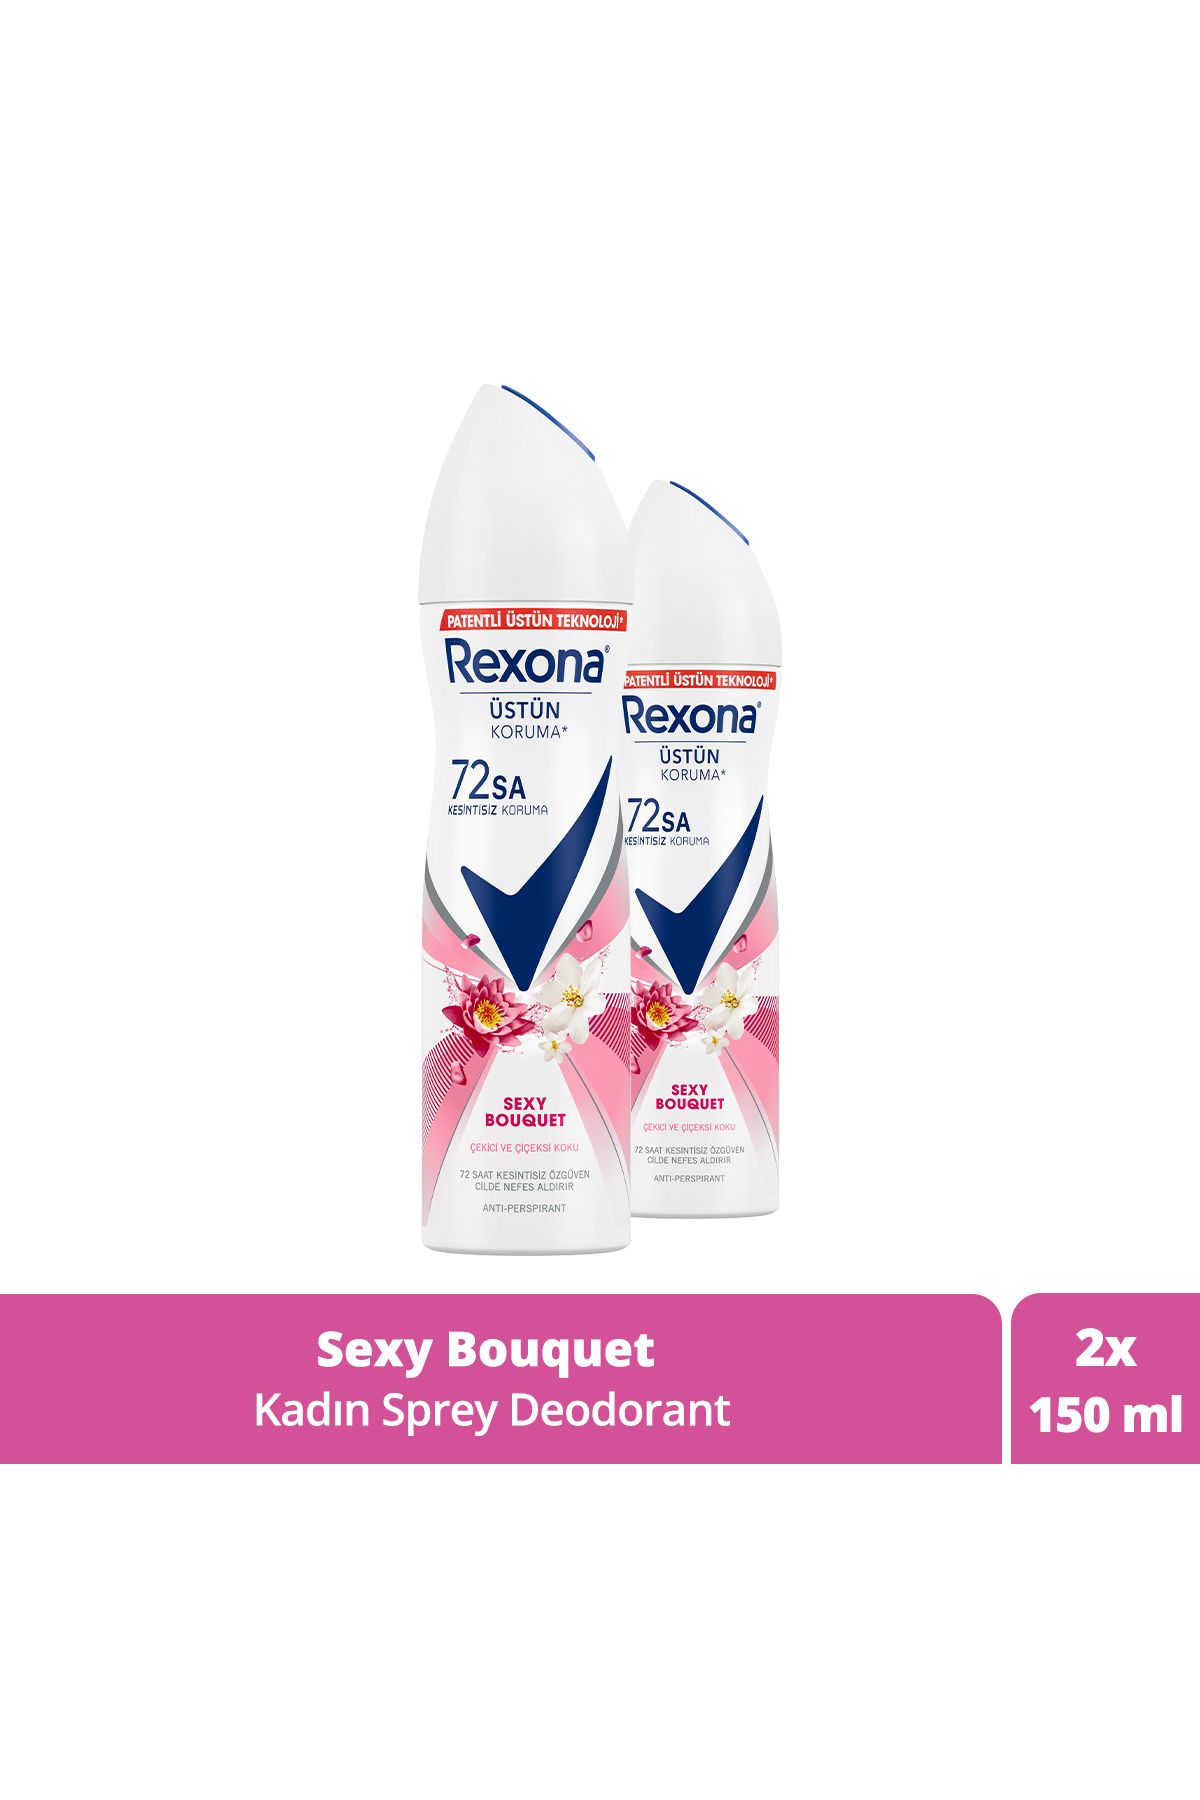 Rexona Kadın Sprey Deodorant Sexy Bouquet 72 Saat Kesintisiz Üstün Koruma 150 ml X2